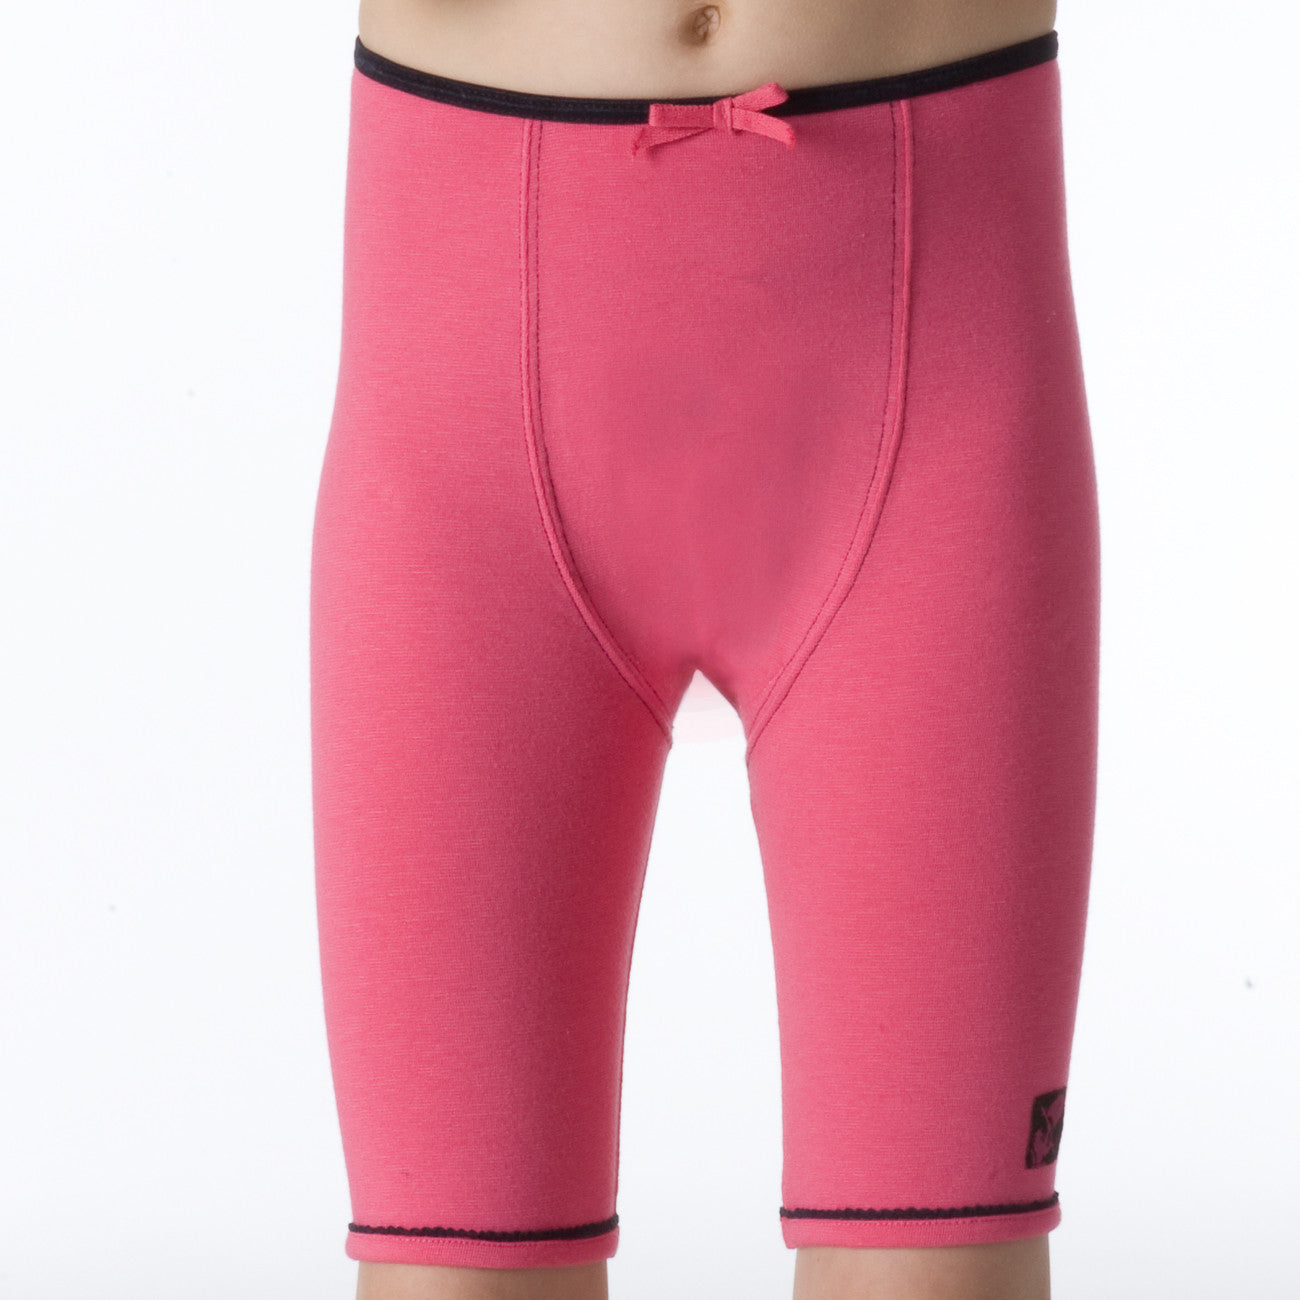 BikerBocker Underwear - Hot Pink